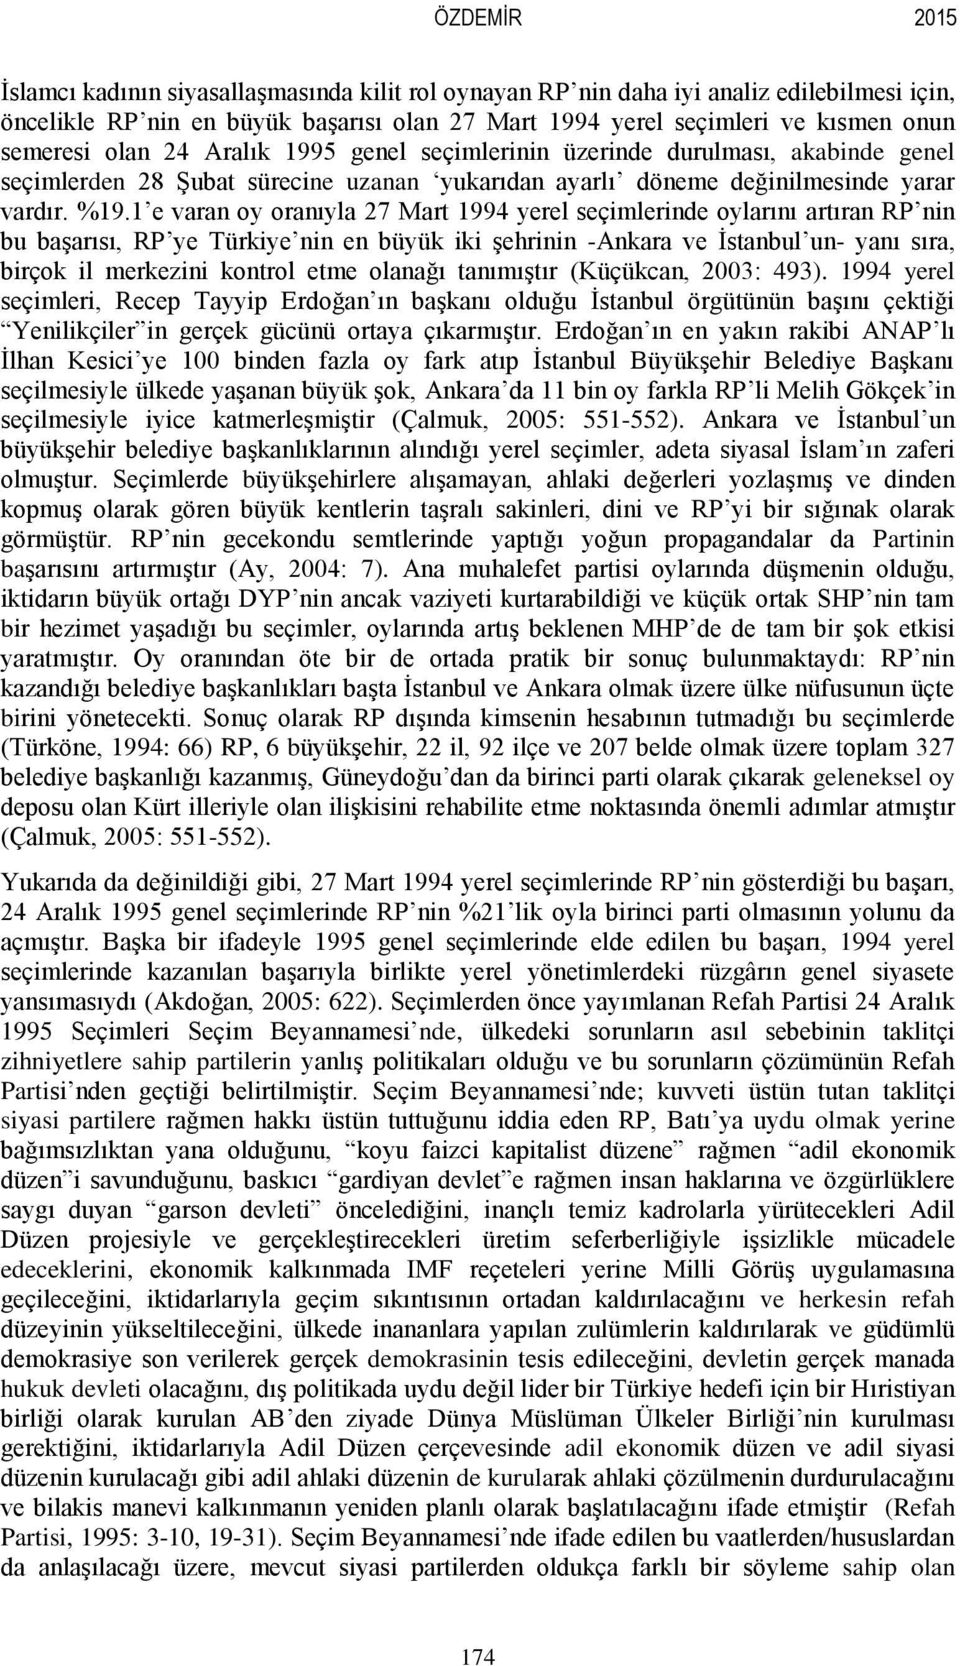 1 e varan oy oranıyla 27 Mart 1994 yerel seçimlerinde oylarını artıran RP nin bu başarısı, RP ye Türkiye nin en büyük iki şehrinin -Ankara ve İstanbul un- yanı sıra, birçok il merkezini kontrol etme